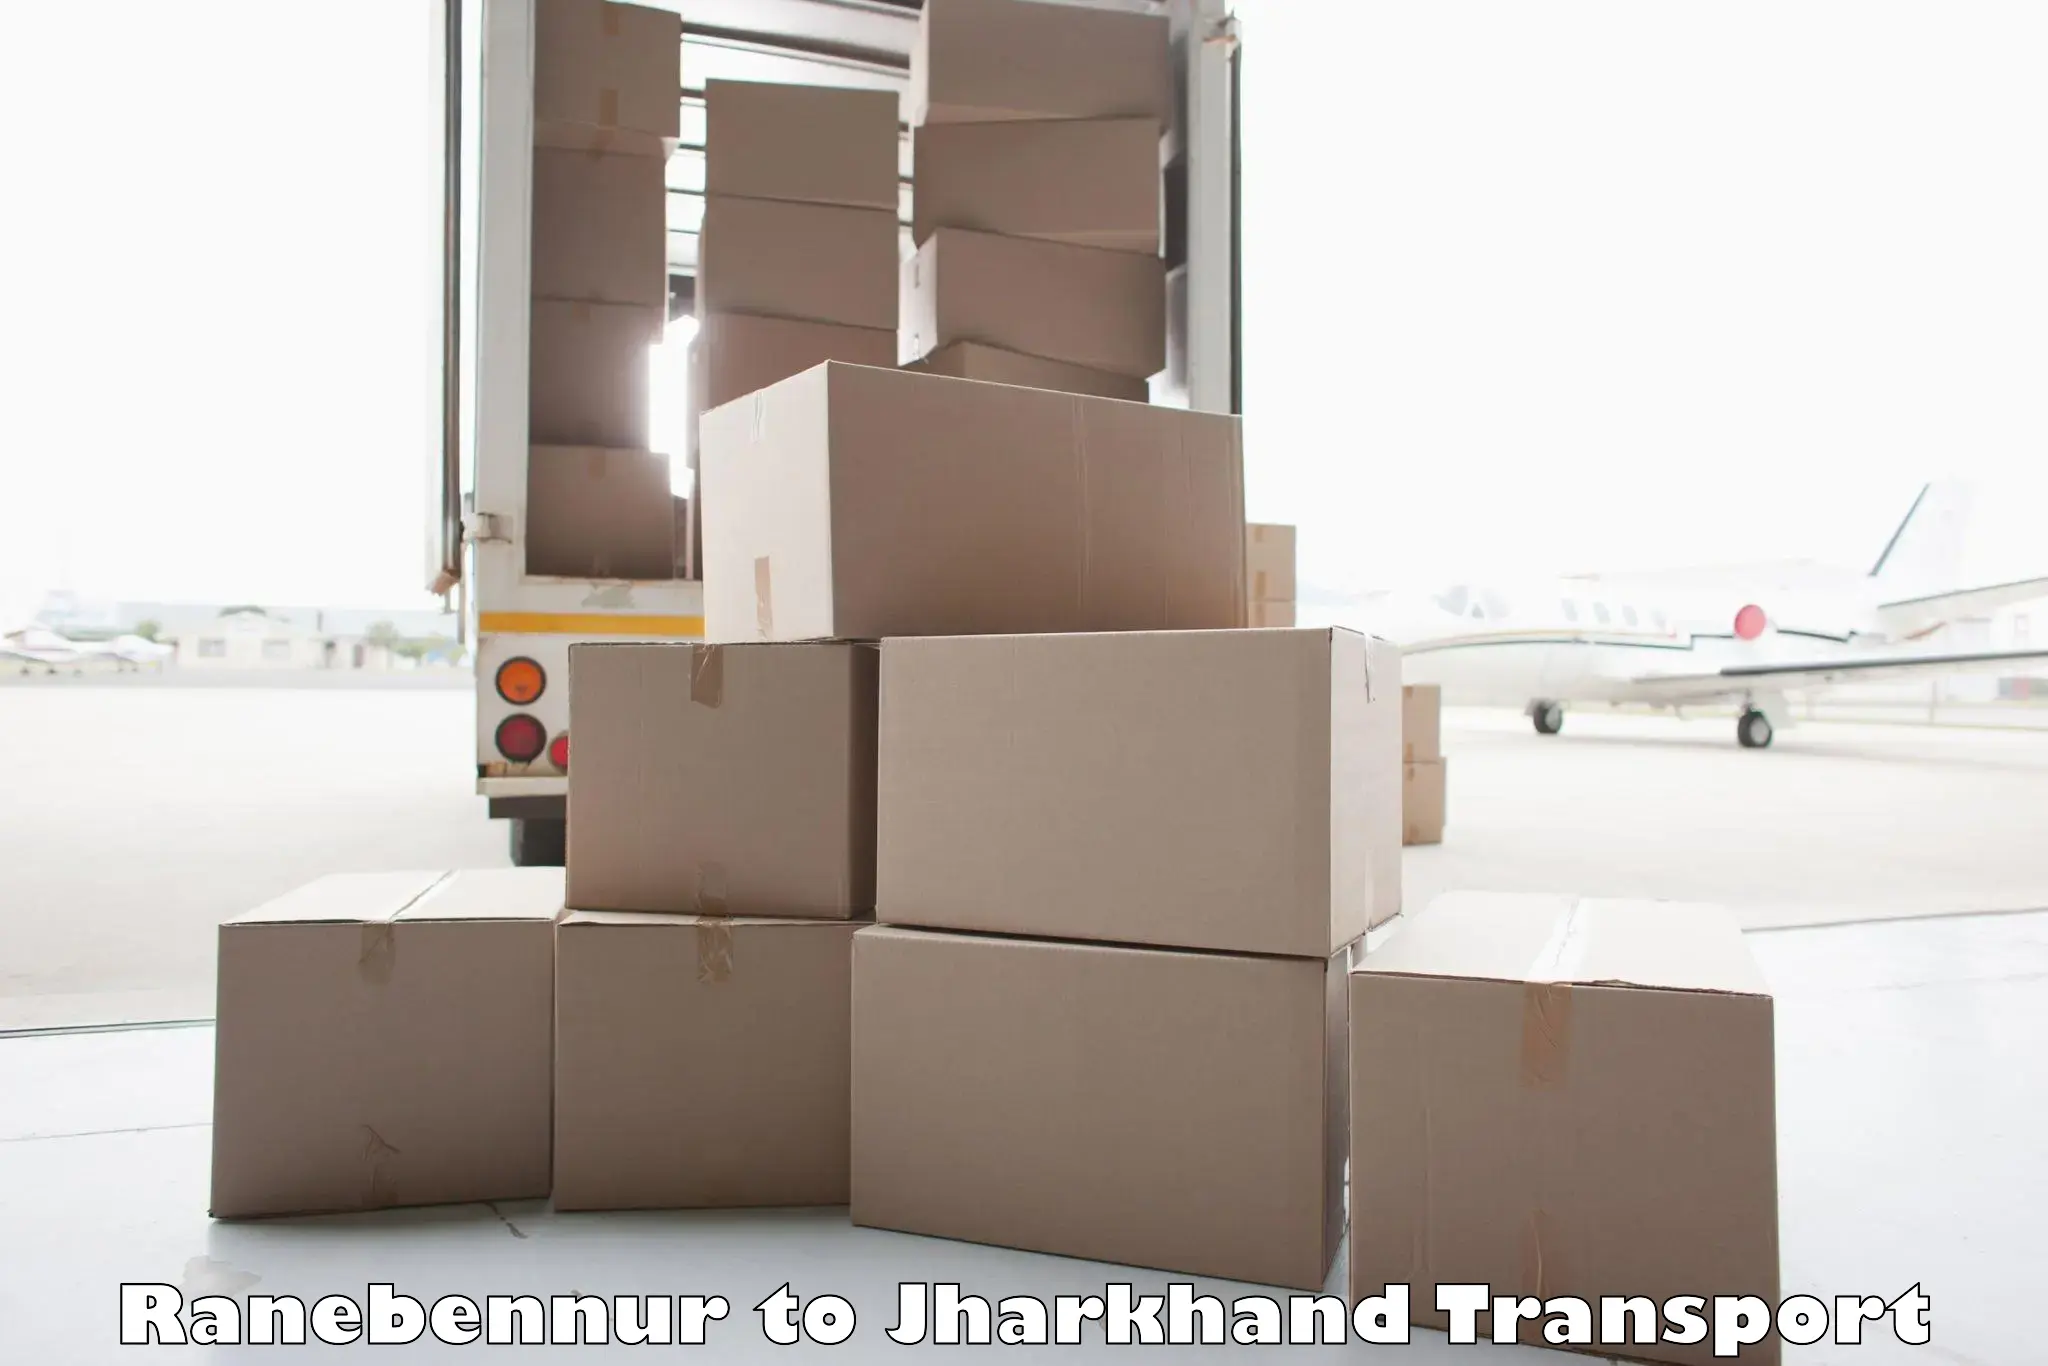 Cargo transport services Ranebennur to Chandwa